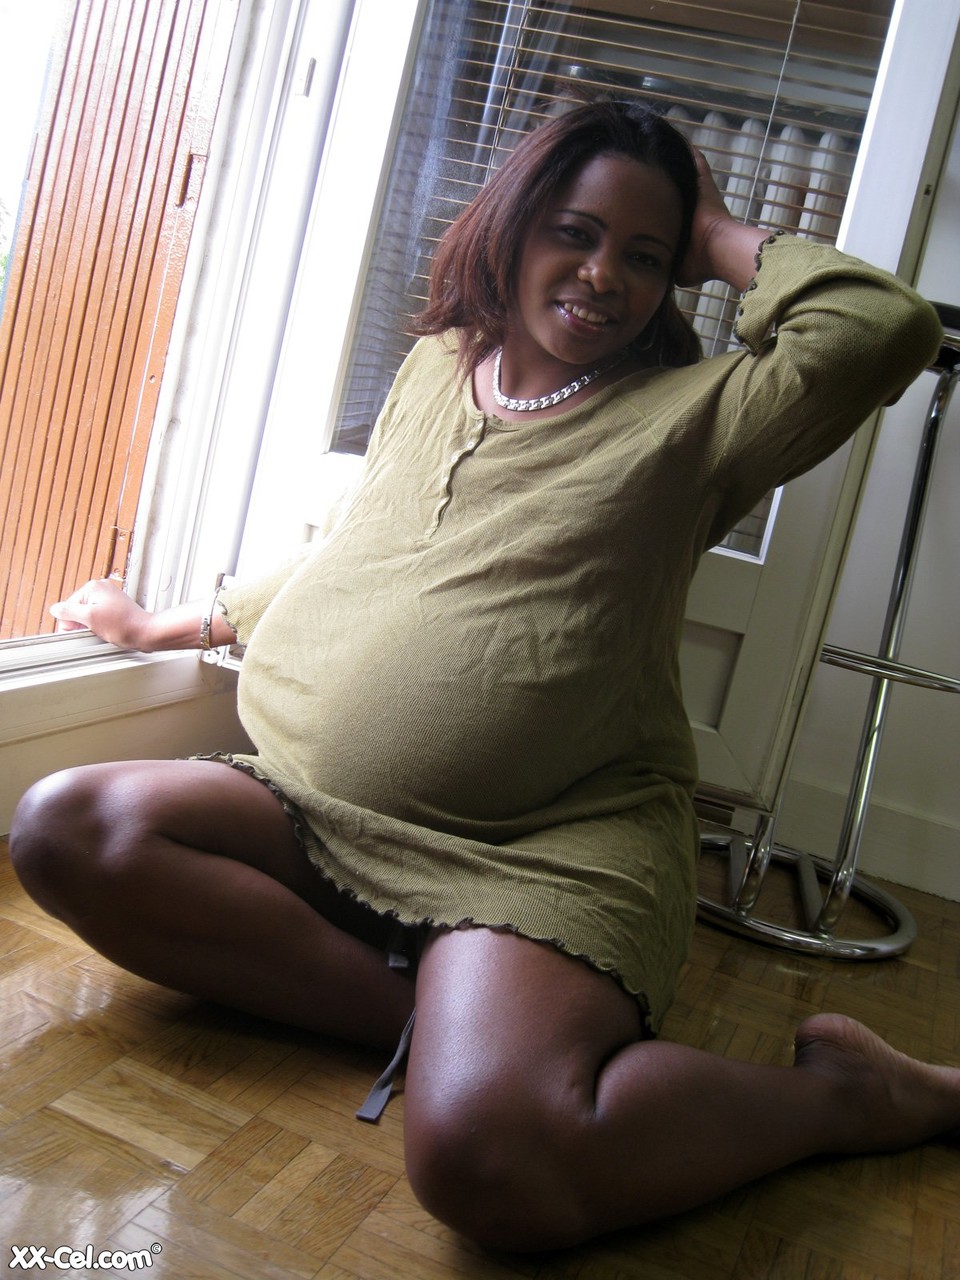 Ebony wife Miosotis Claribel strips and exposes her tremendous breasts 色情照片 #423623663 | XX Cel Pics, Miosotis Claribel, Saggy Tits, 手机色情